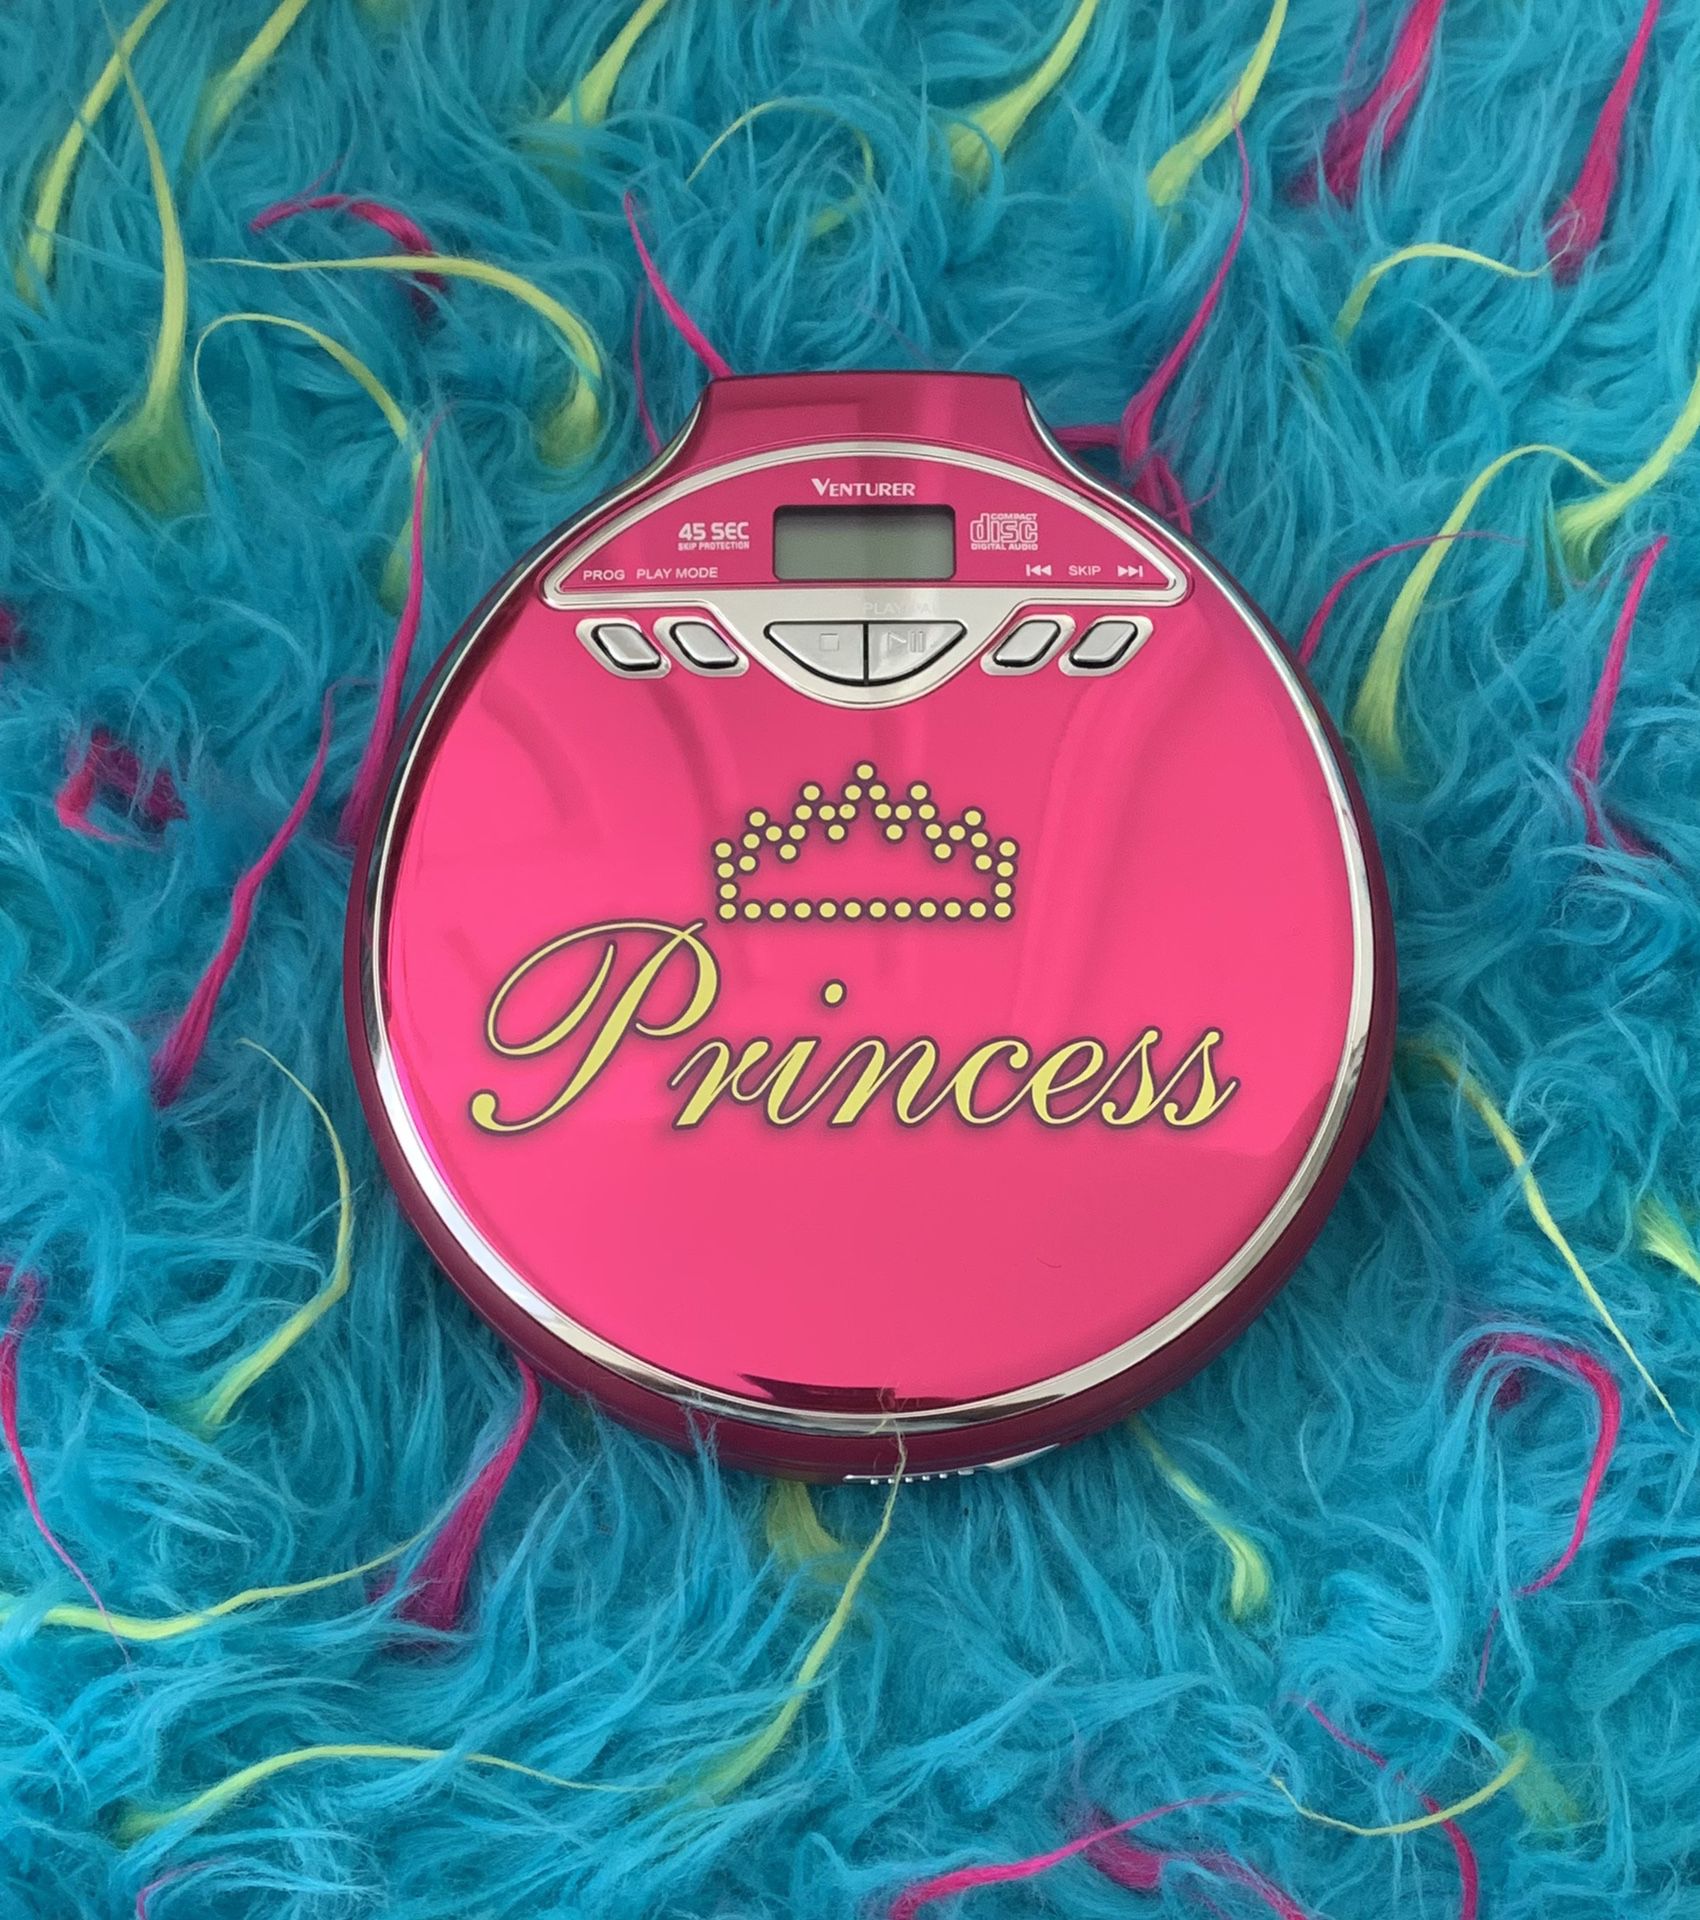 Pink Venturer Princess CD Player